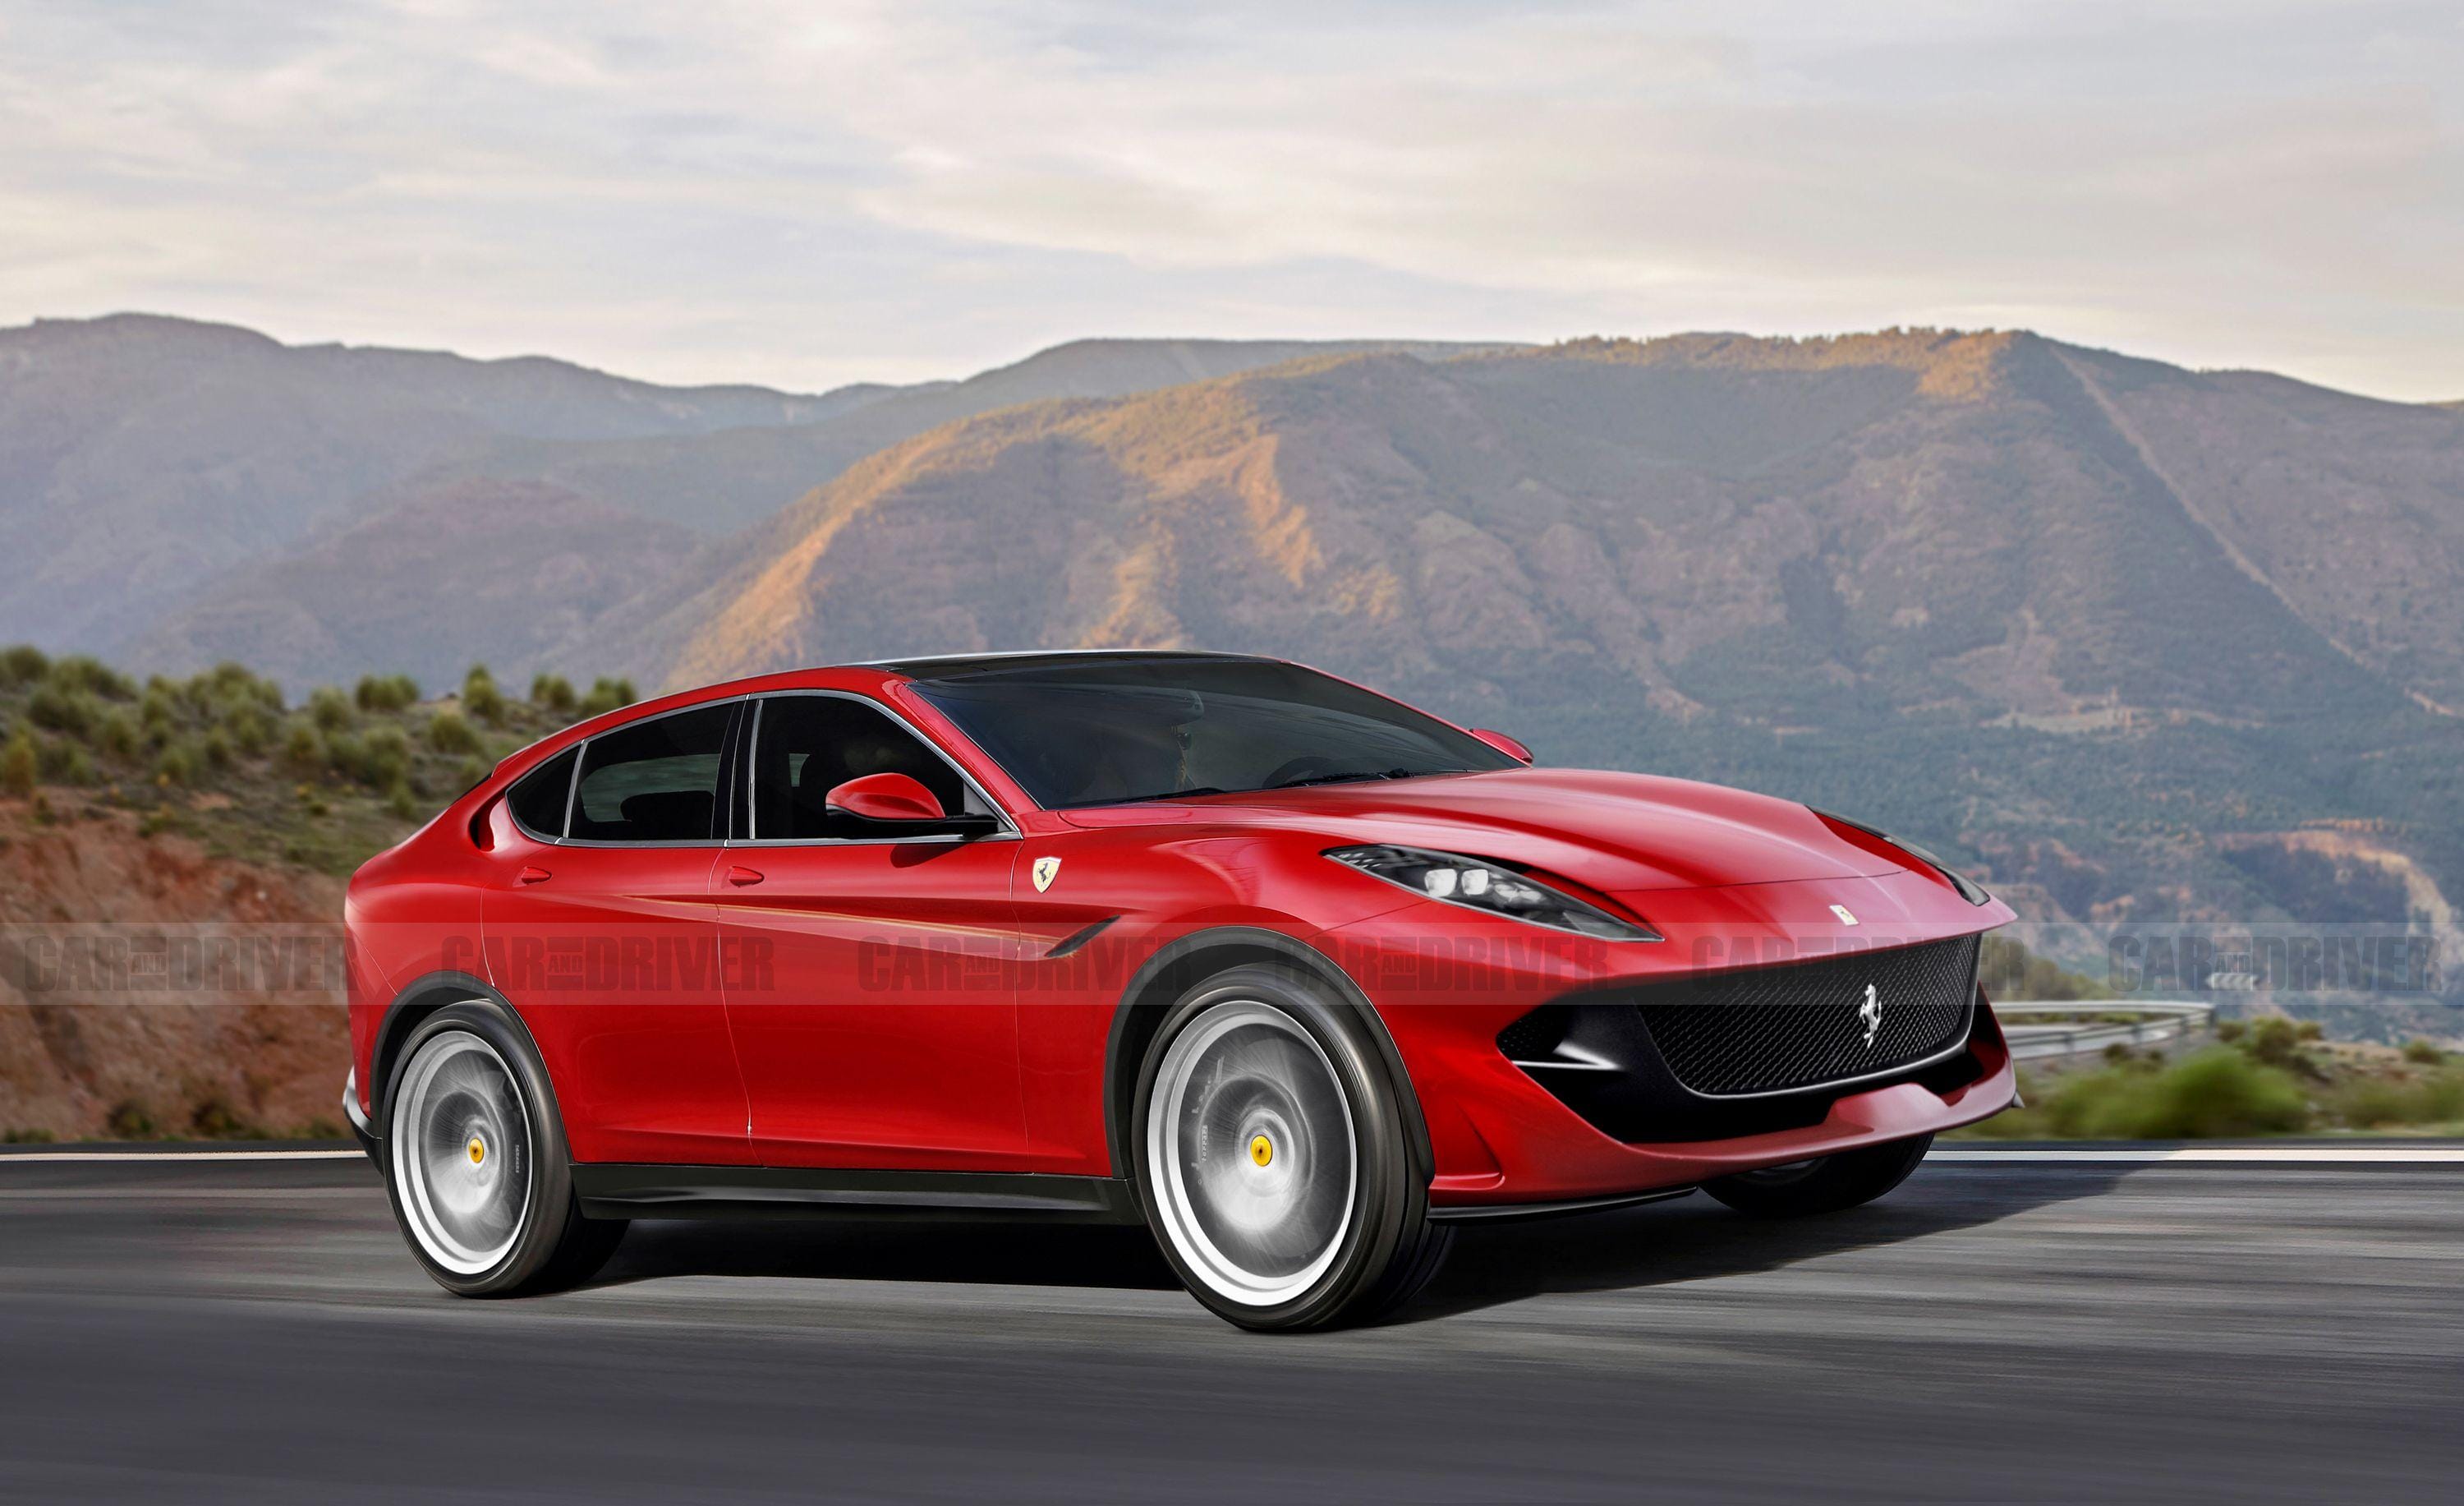 SUV 2023 Ferrari Purosangue: Mẫu SUV chiến lược của Ferrari có đáng để kỳ  vọng? - LUXUO.VN